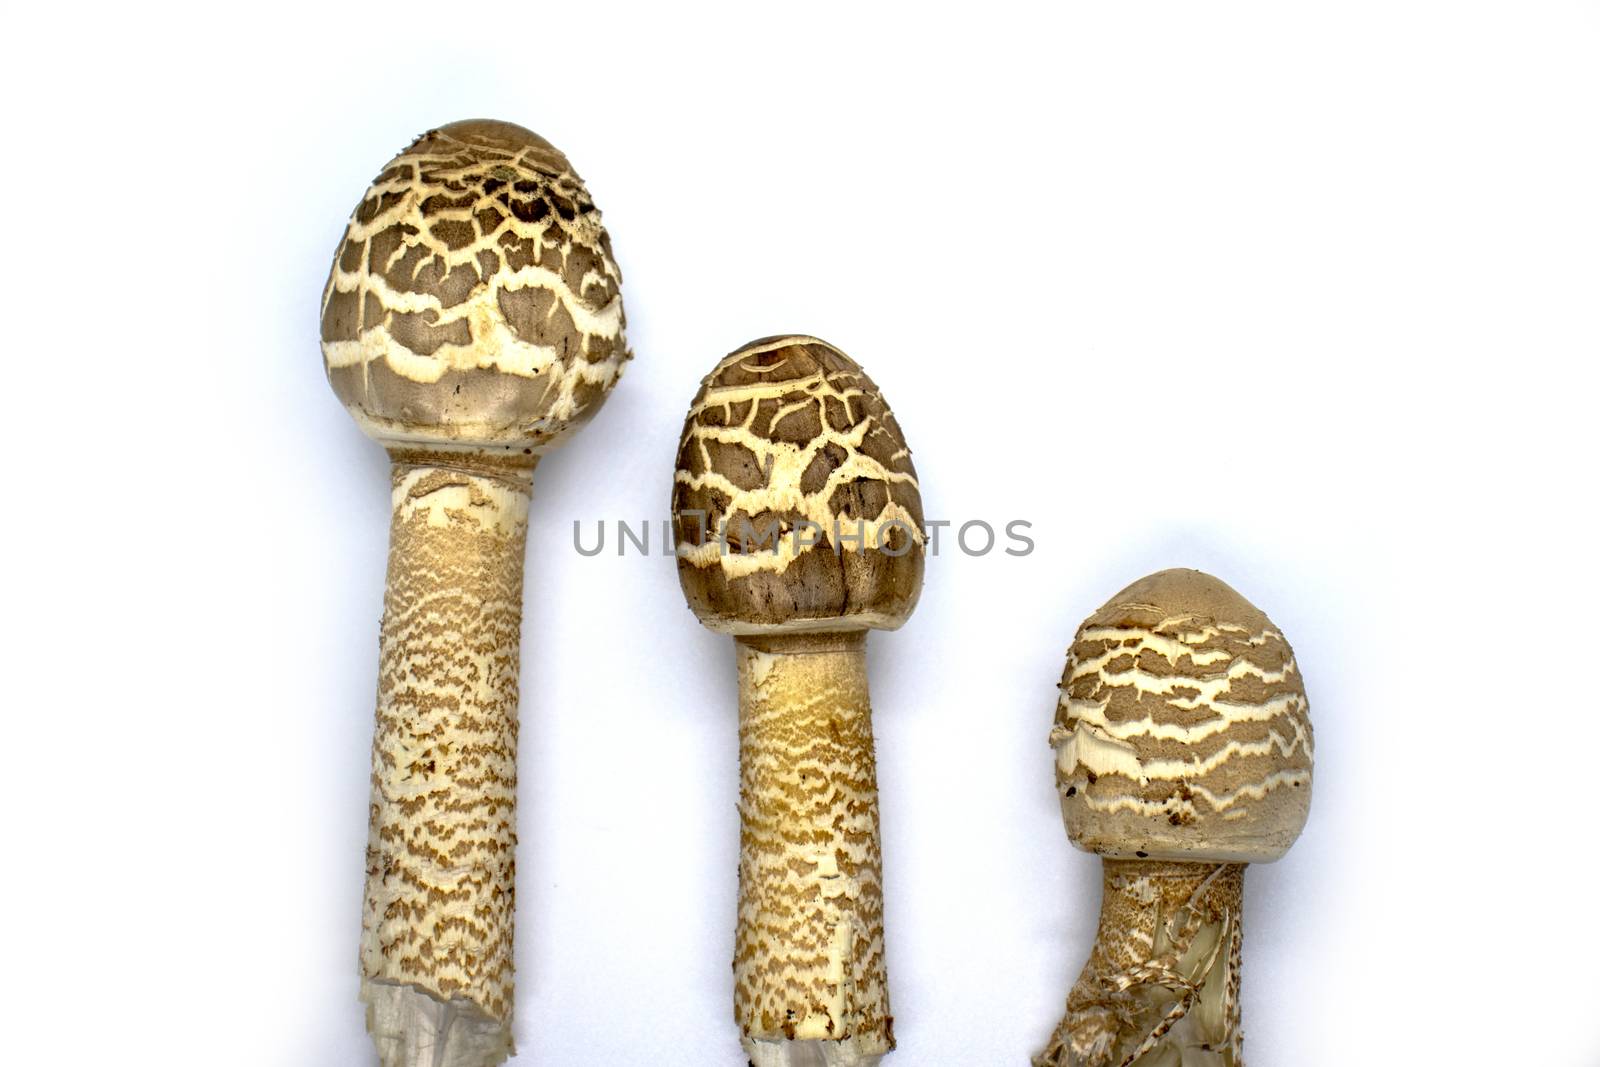 parasol mushroom on white background close up Macrolepiota procera.